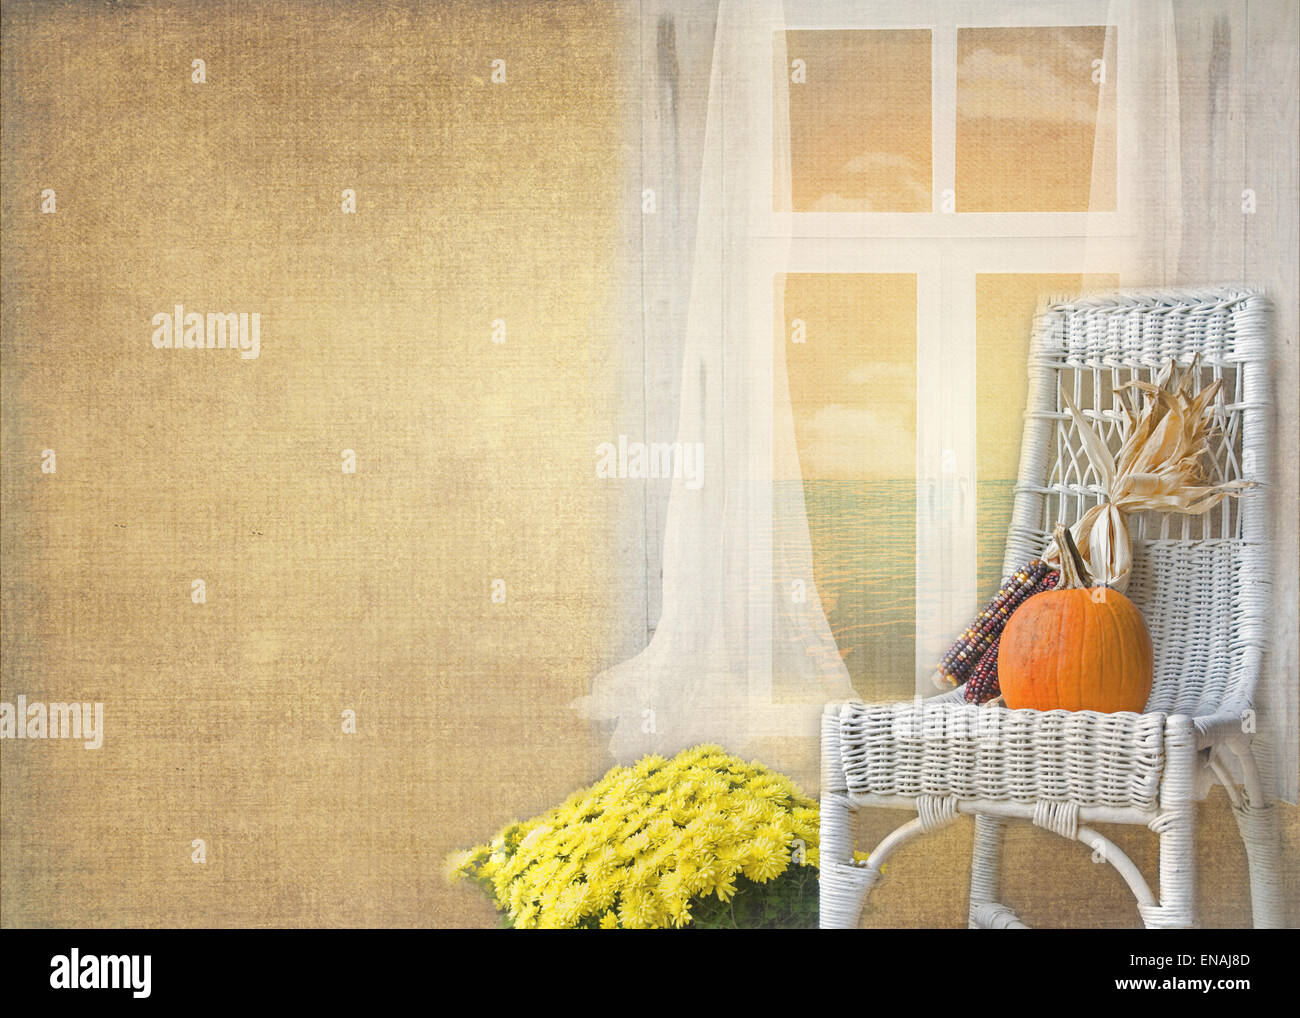 Herbstliche Kürbis und Mais auf einem weißen Korbstuhl Fenster. Stockfoto